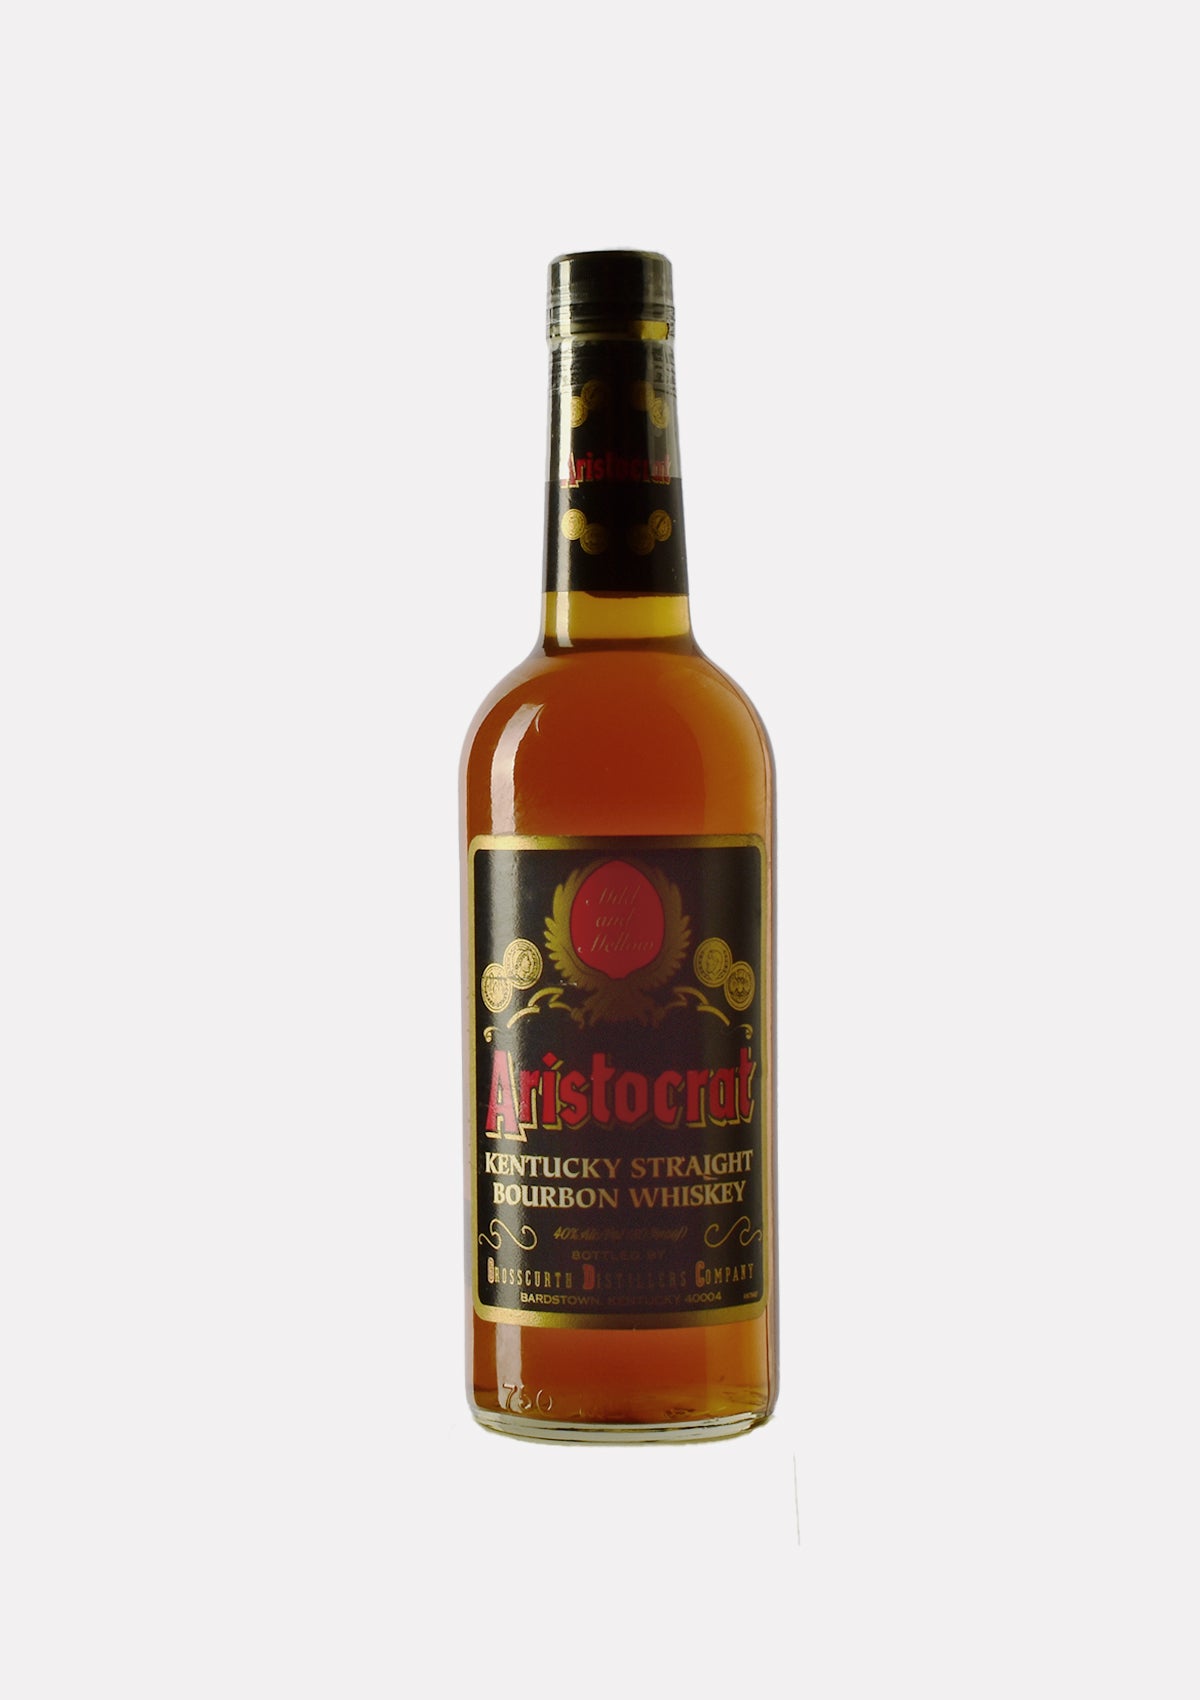 Aristocrat Kentucky Straight Bourbon Whiskey